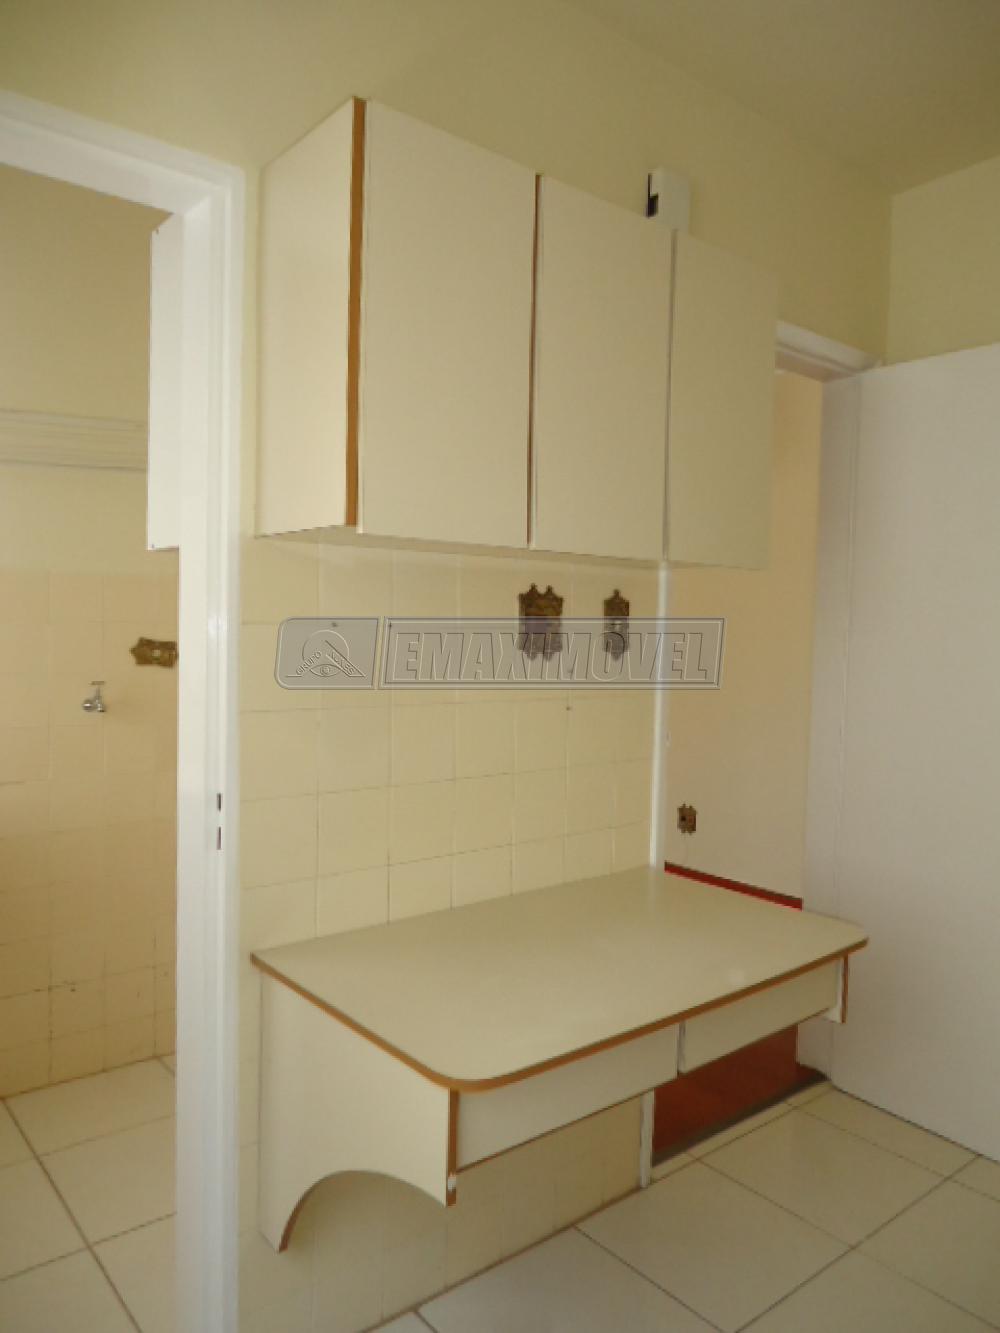 Alugar Apartamento / Padrão em Sorocaba R$ 1.000,00 - Foto 13